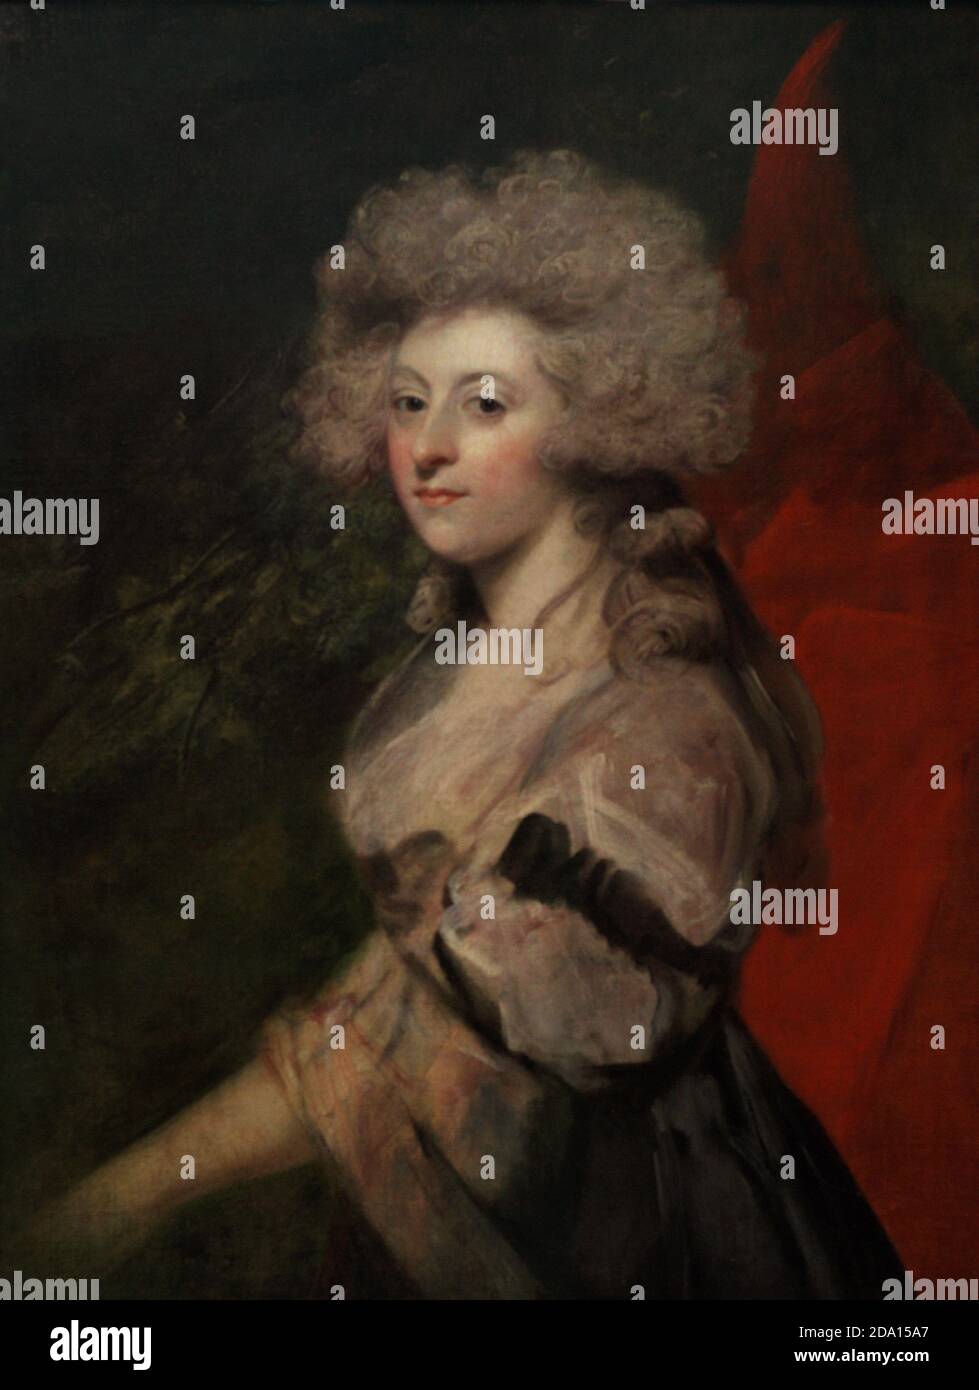 Maria Anne Fitzherbert (1756-1837). Épouse secrète du prince de Galles, futur roi George IV du Royaume-Uni. Portrait de Sit Joshua Reynolds (1723-1792). Huile sur toile (91,4 x 71,1 cm), c. 1788. Musée national du portrait. Londres, Angleterre, Royaume-Uni. Banque D'Images